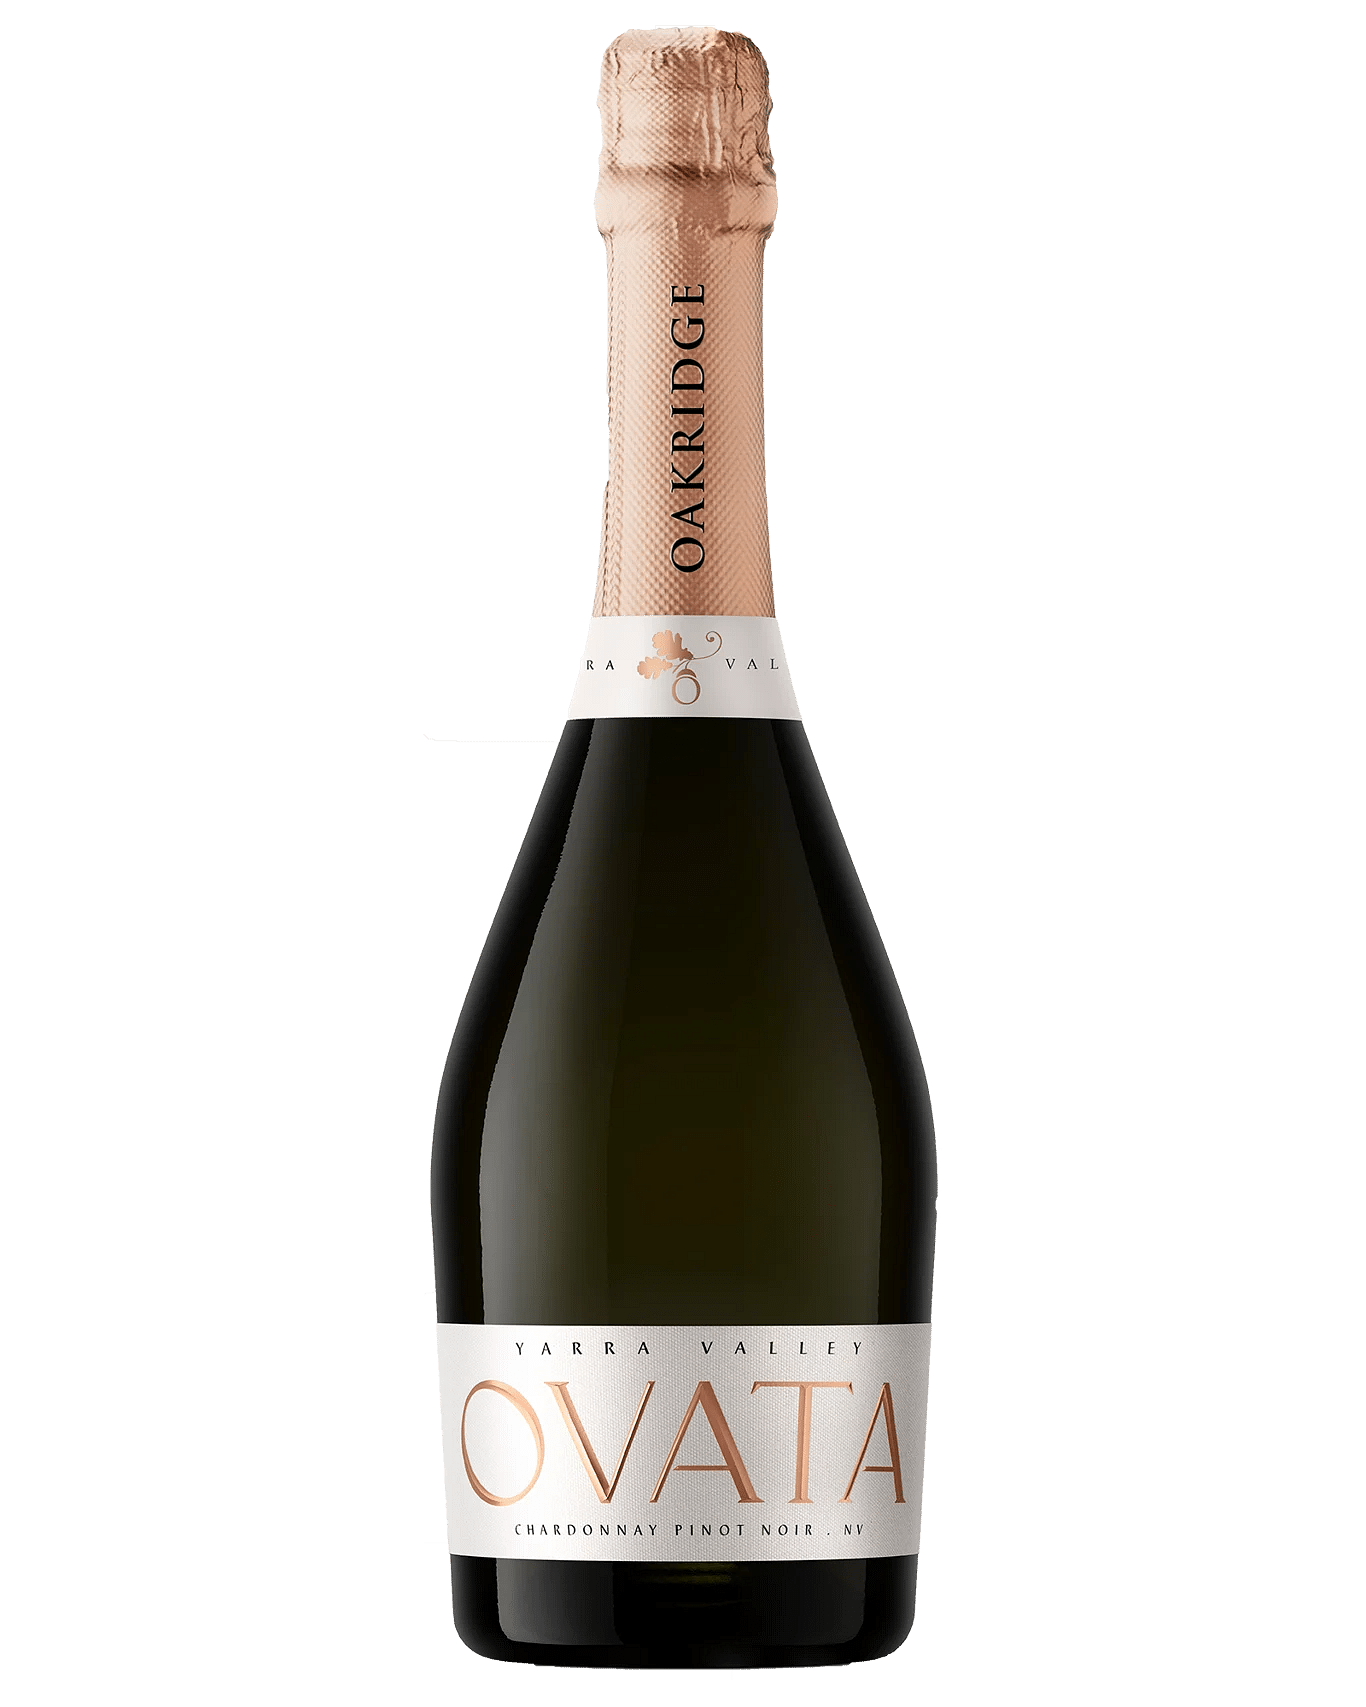 Oakridge Ovata Chardonnay Pinot Noir NV